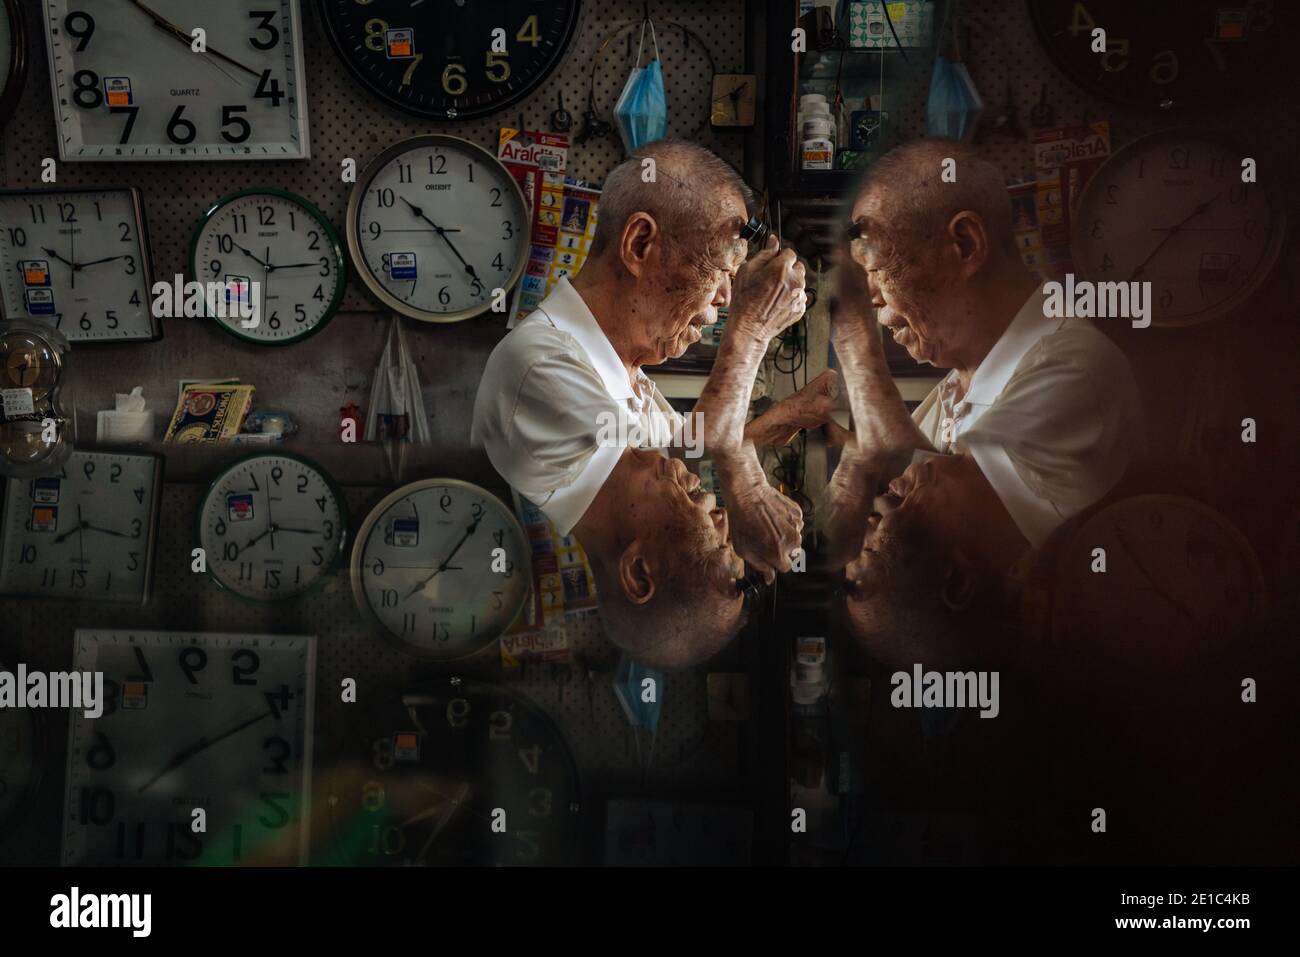 Pékin, Malaisie. 5 décembre 2020. Wai Wah, un réparateur de montres, travaille à l'atelier de réparation de montres Yoke Chong à Klang, dans l'État de Selangor, en Malaisie, le 5 décembre 2020. Wai Wah, 84 ans, a fixé des montres et des horloges depuis le milieu des années 1950. Il est maintenant le seul réparateur de montres qui travaille encore à l'âge de plus de 80 ans, dans l'un des quatre magasins de montres de l'ancien Klang. Credit: Zhu Wei/Xinhua/Alay Live News Banque D'Images